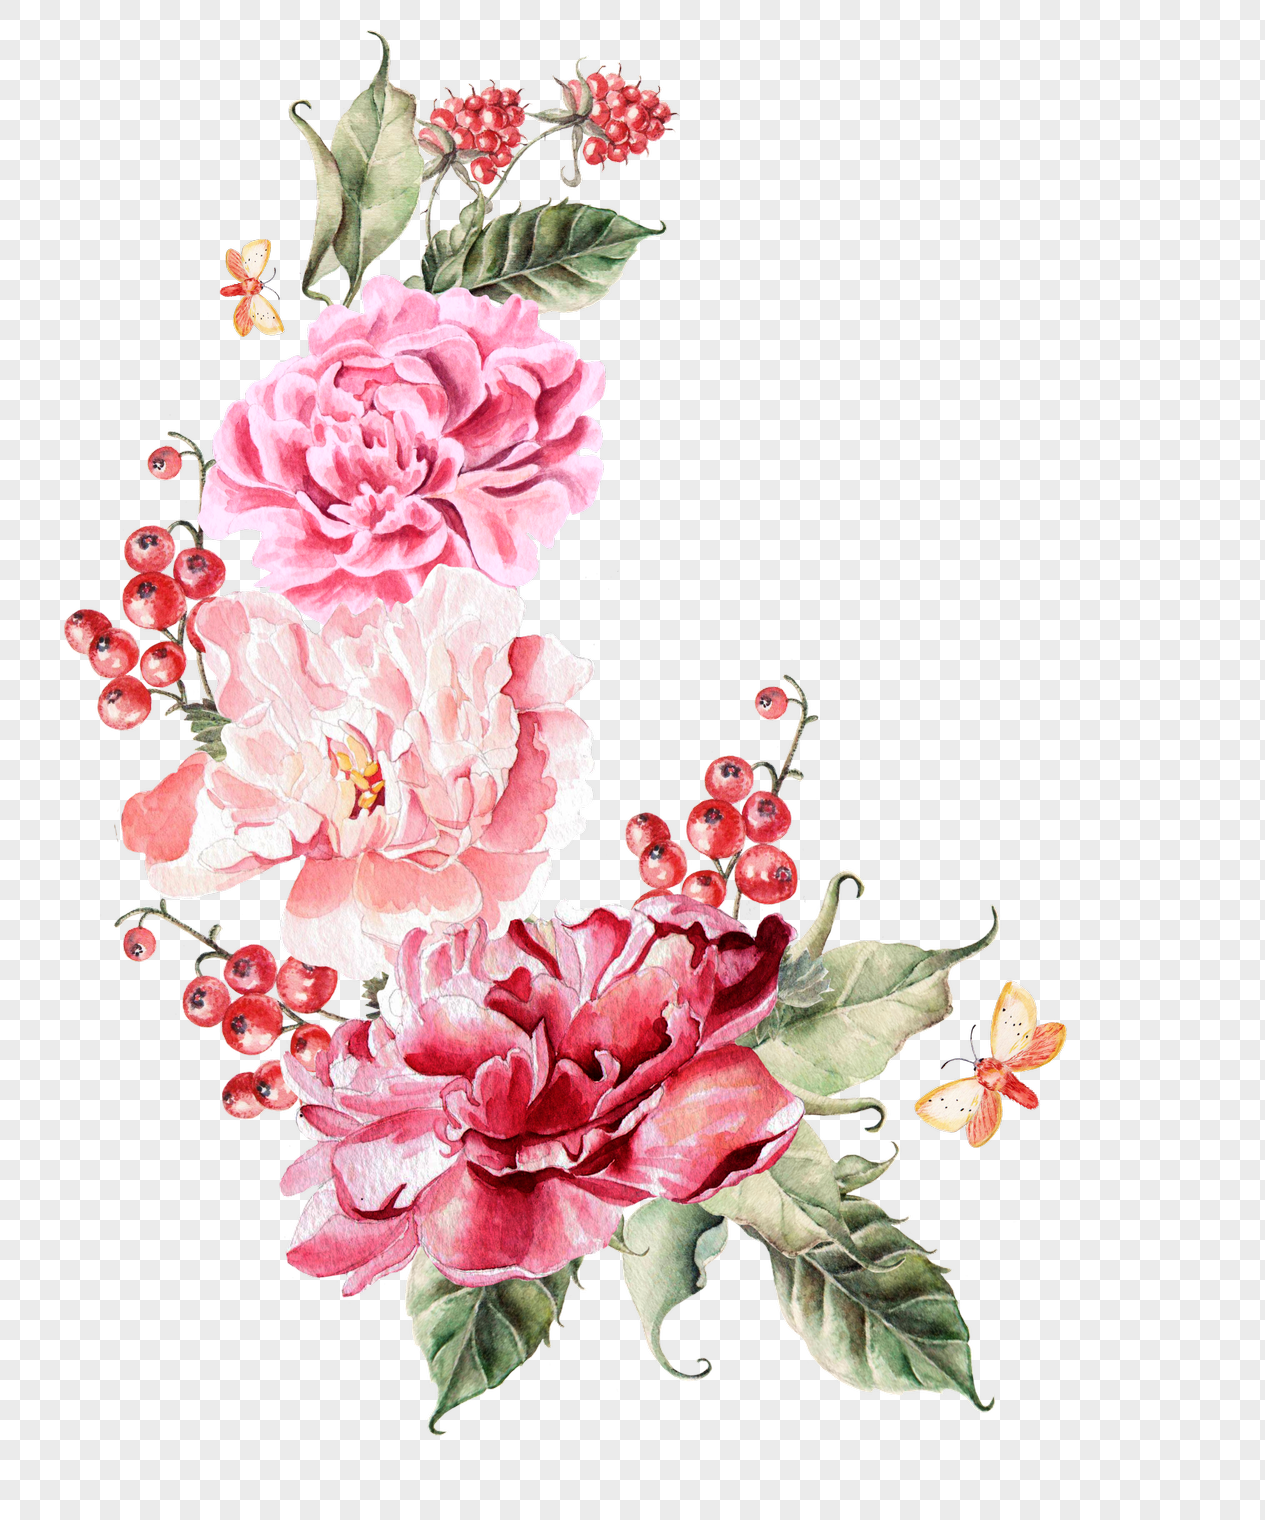 Free Free Wedding Floral Svg 367 SVG PNG EPS DXF File